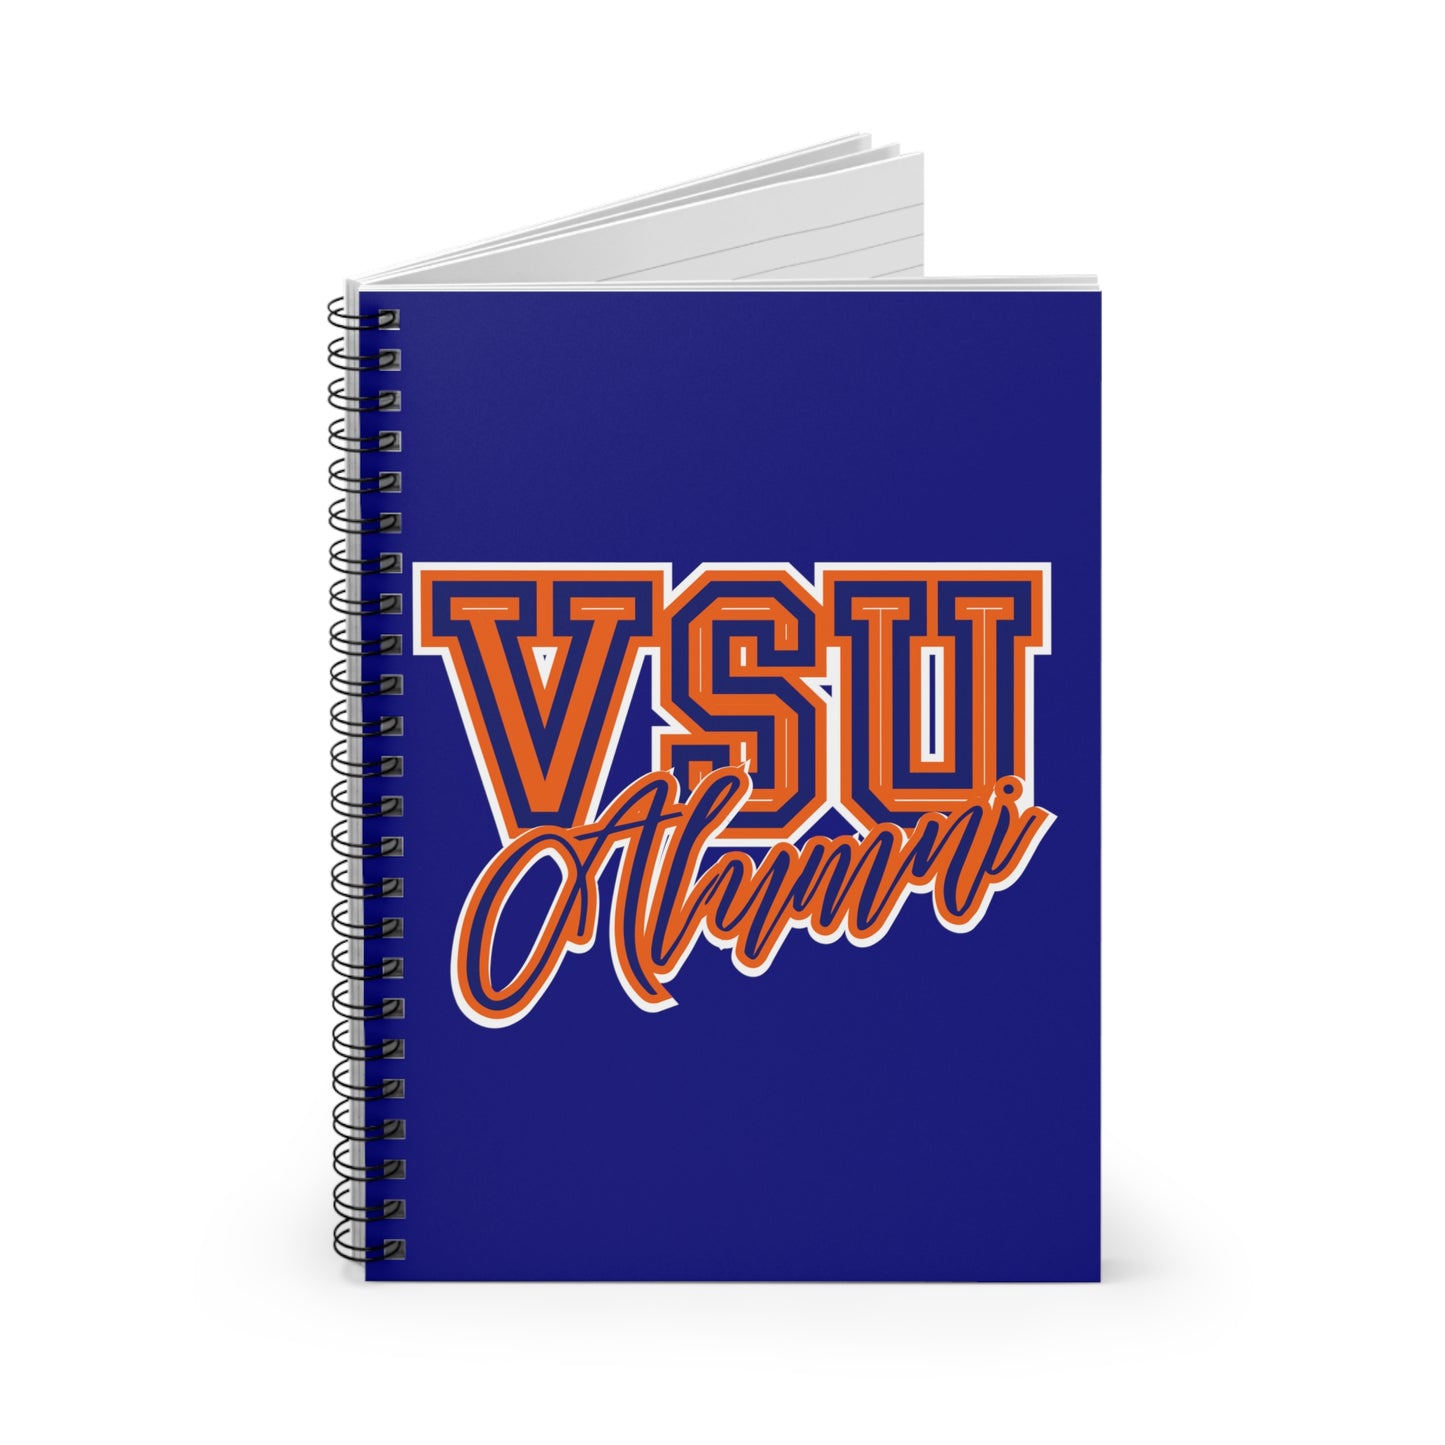 VSU Alumni Spiral Notebook - Ruled Line